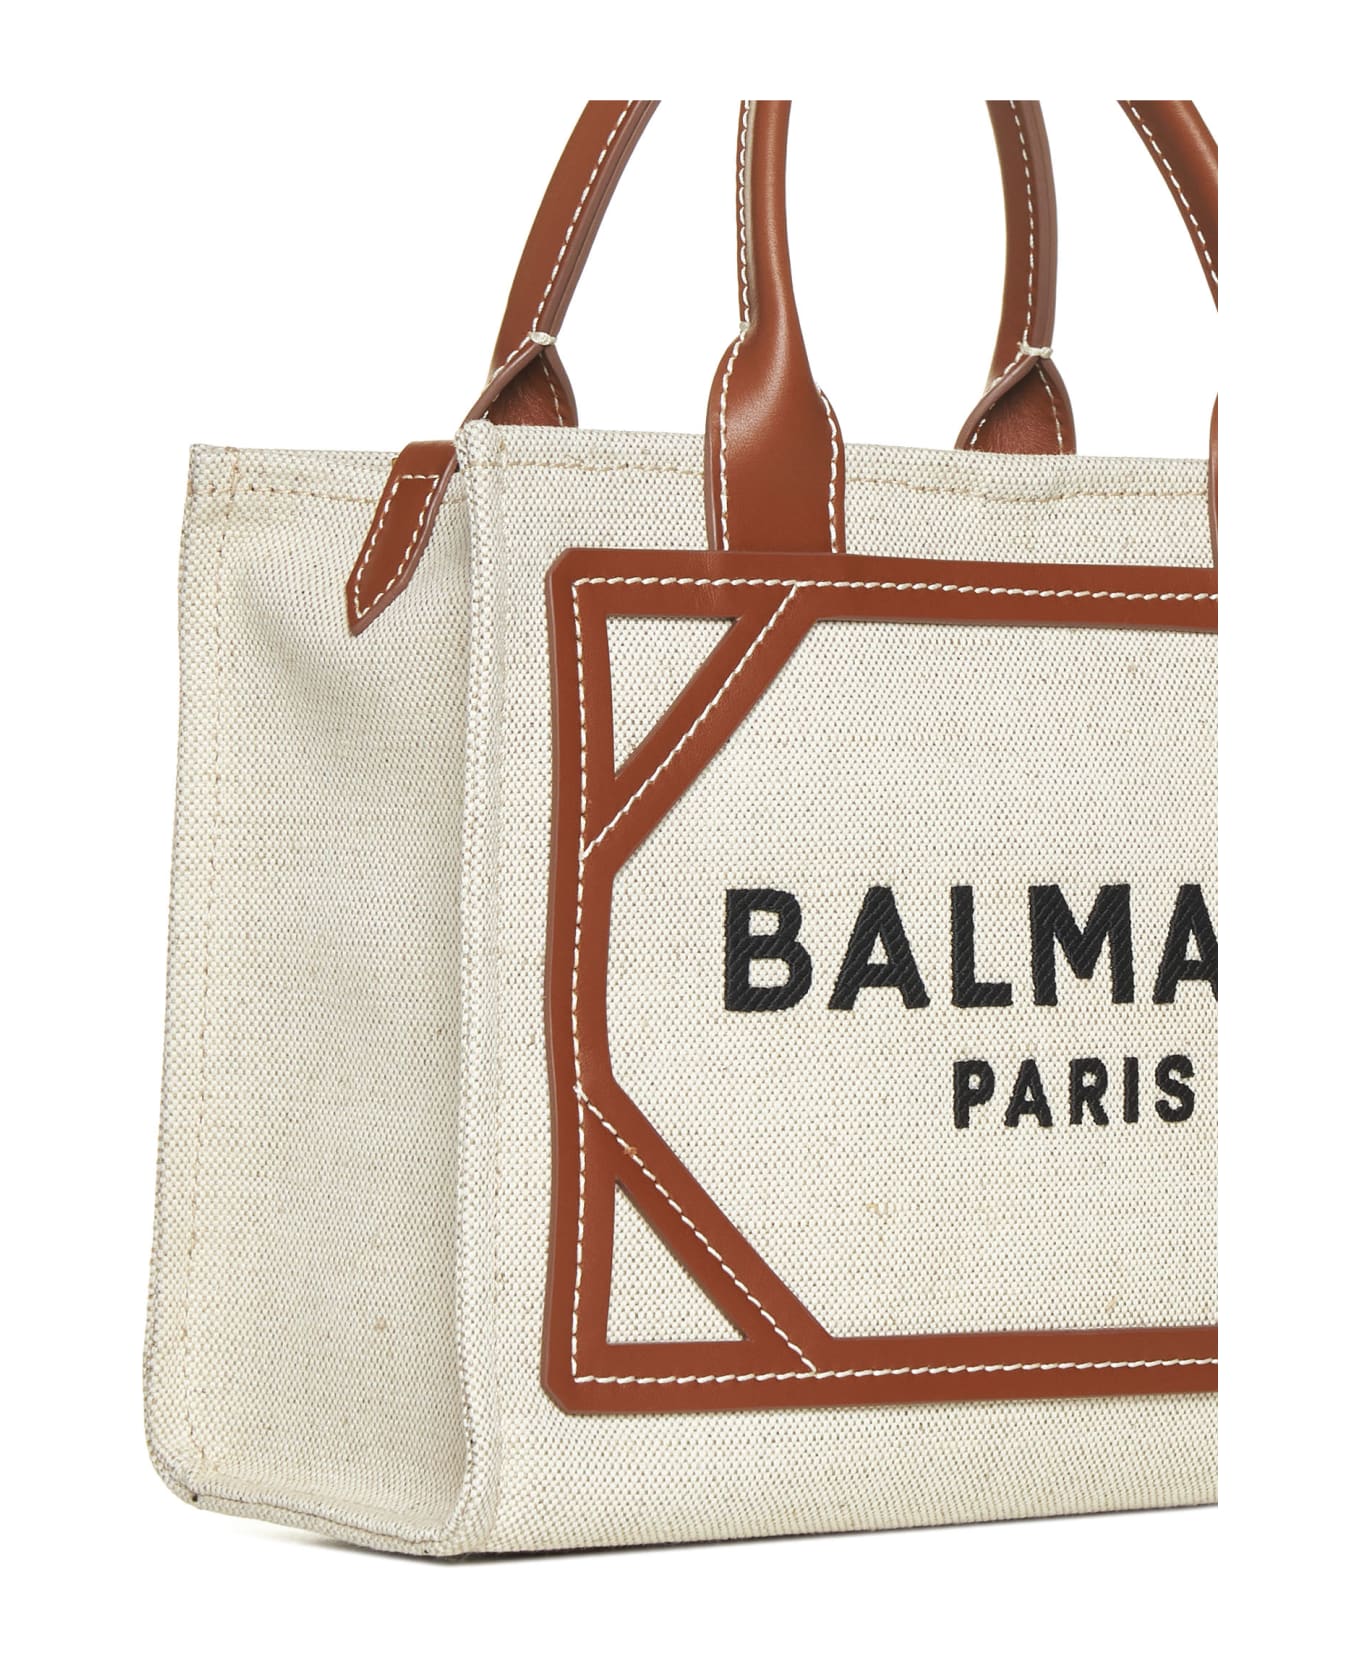 Balmain B-army Small Shopper Bag - Cream トートバッグ